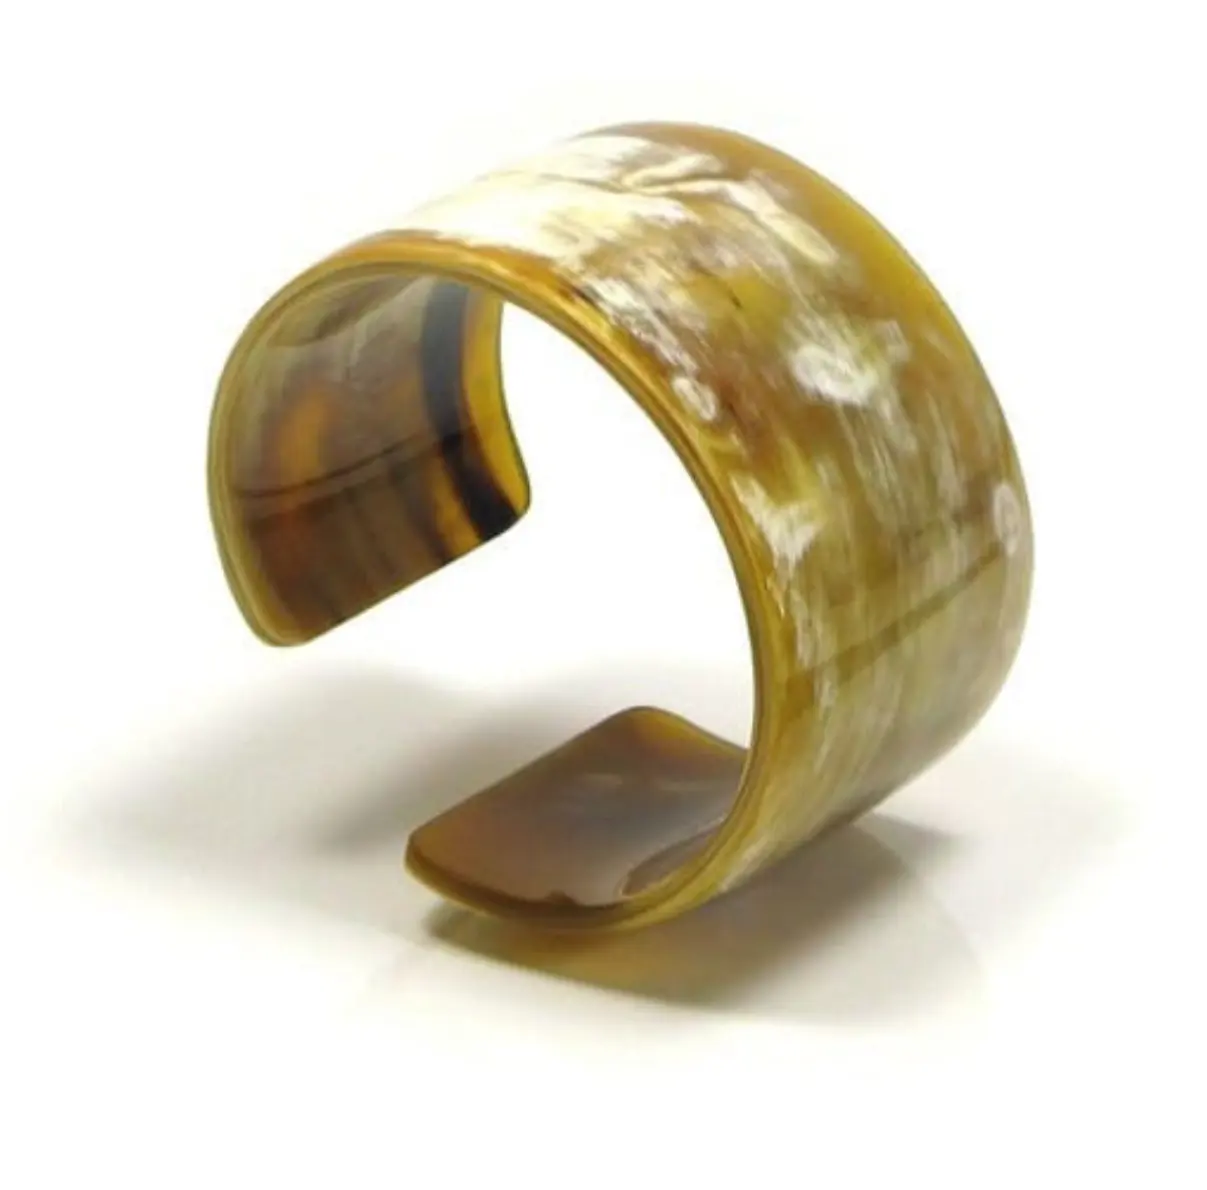 Aksesori hadiah gelang tanduk kerbau buatan tangan kemasan kustom gelang perhiasan modis baru dengan biaya wajar